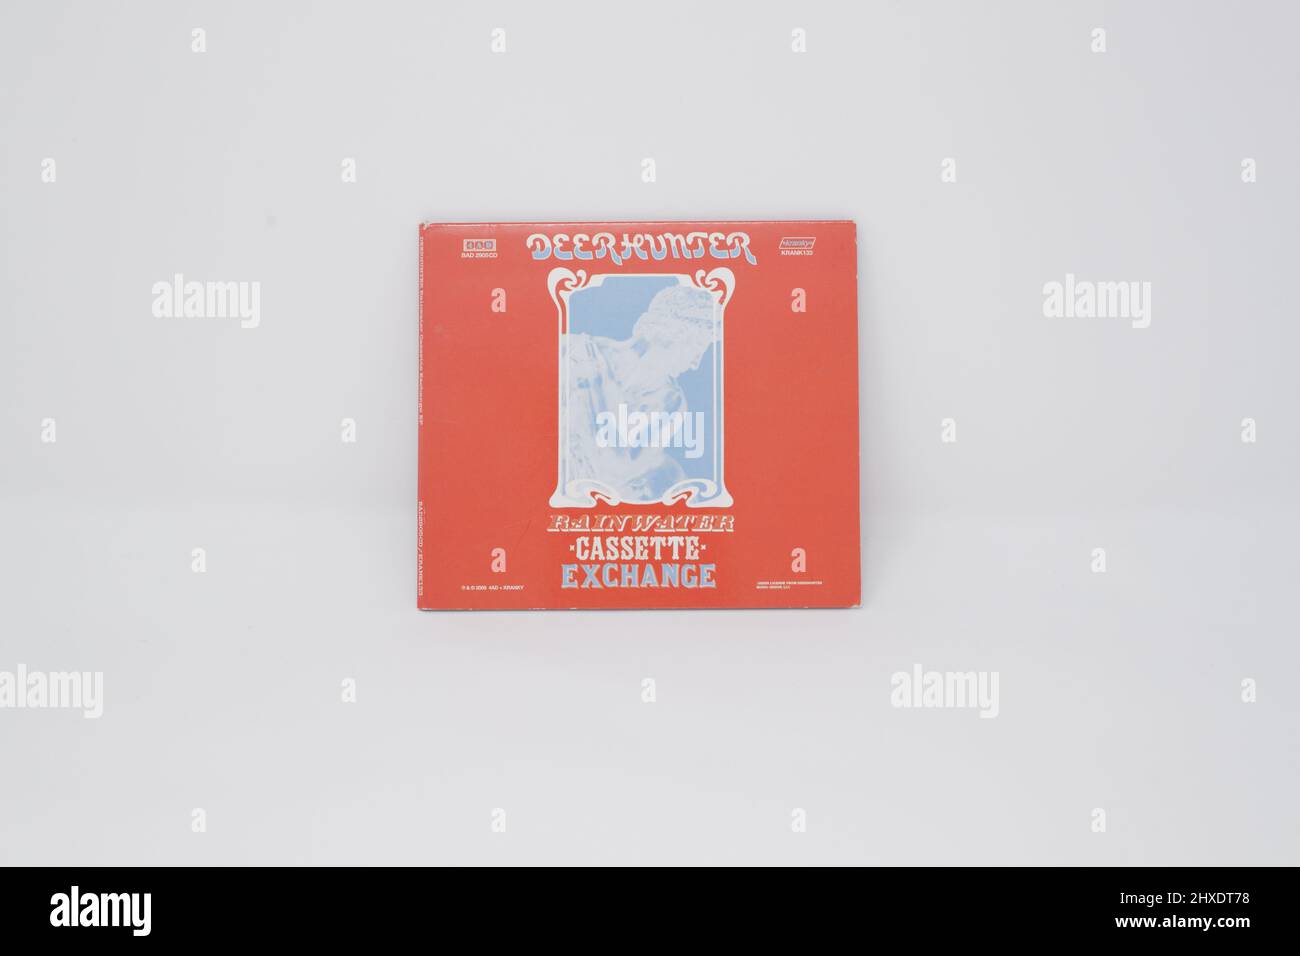 Deerhunter - Rainwater Cassette Exchange album cover on white background Stock Photo